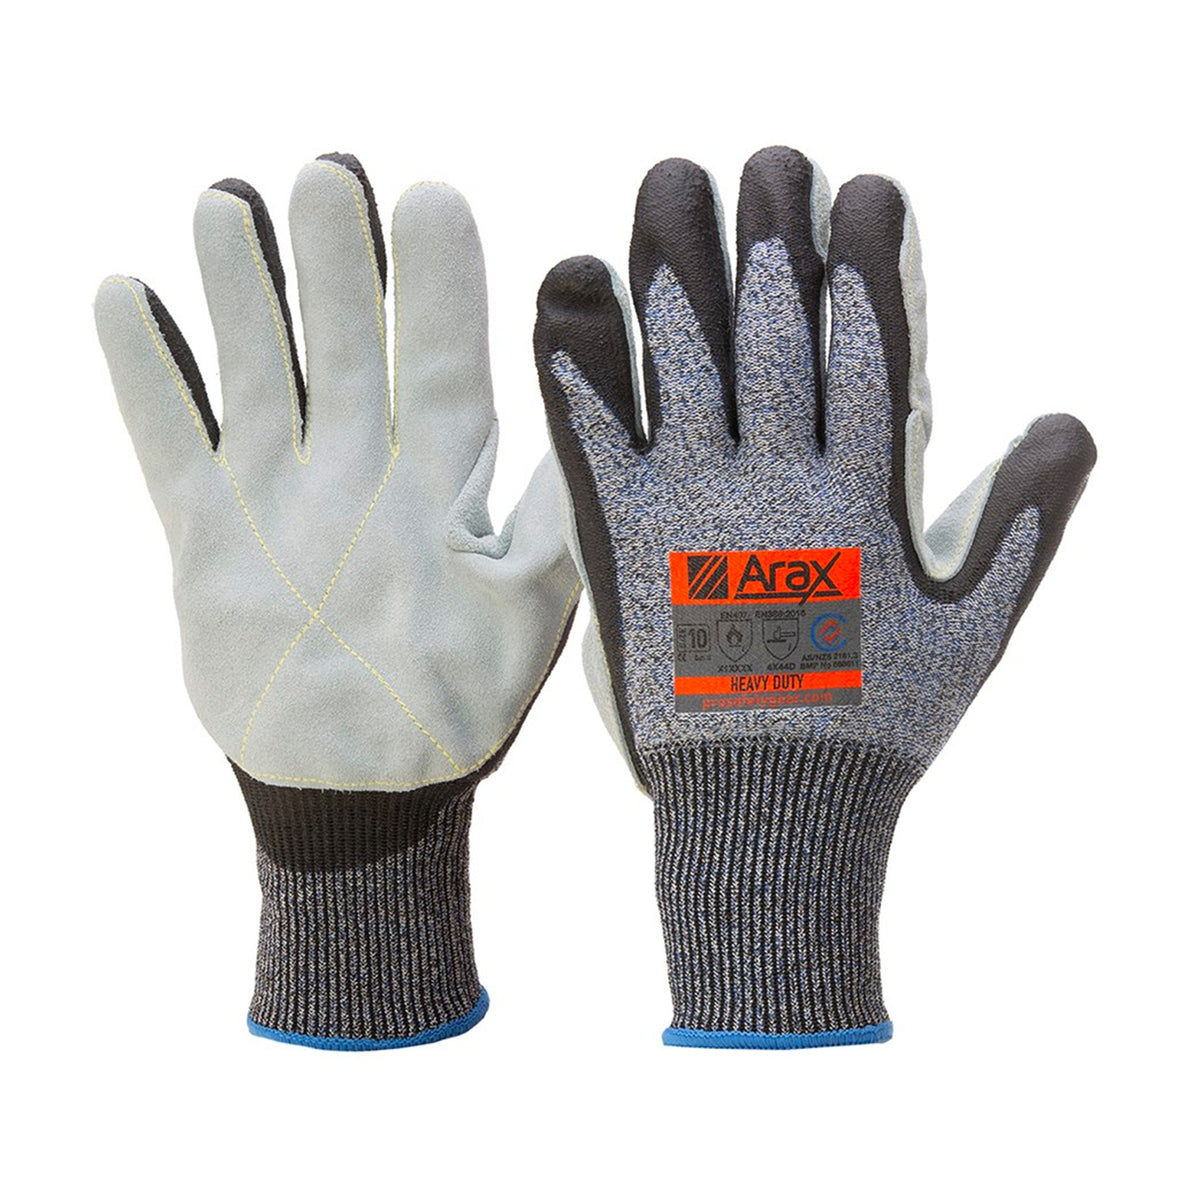 arax heavy duty gloves